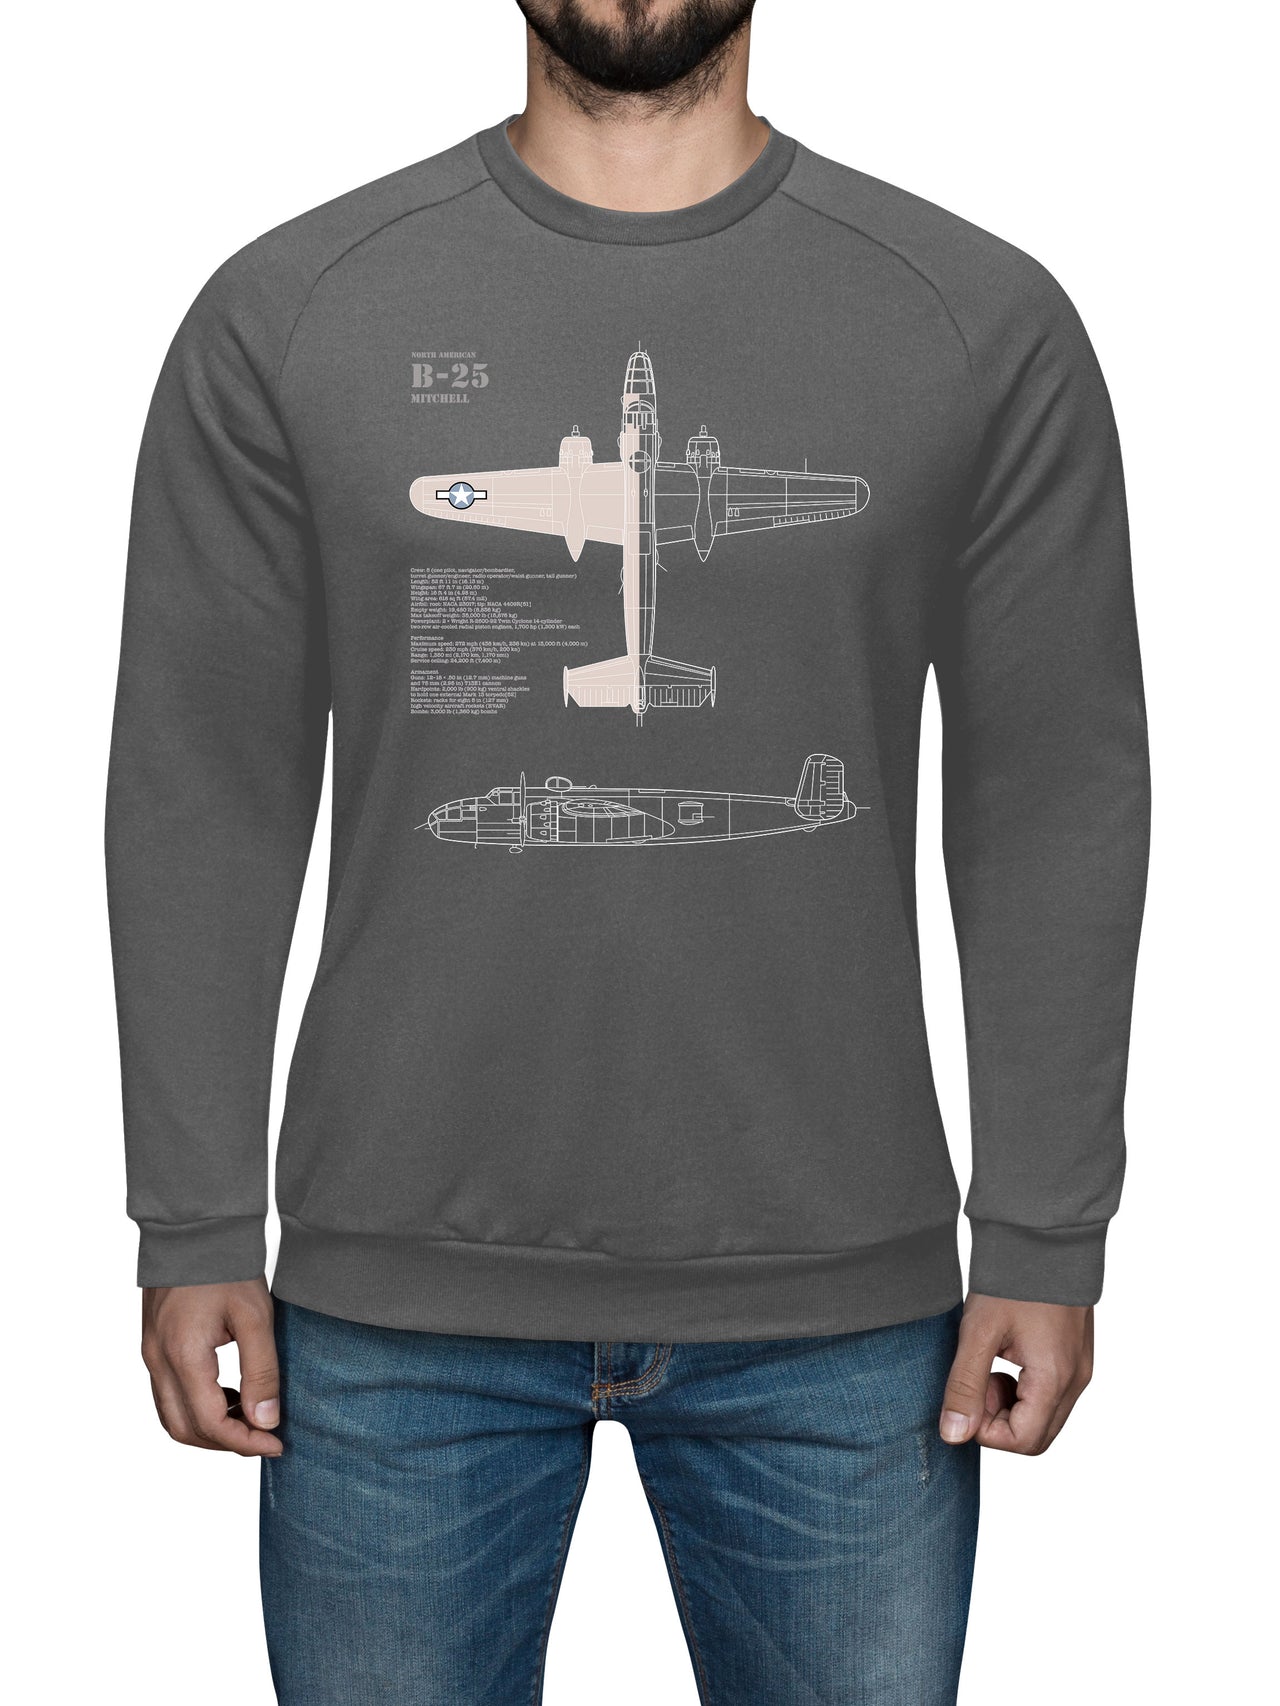 B-25 Mitchell - Sweat Shirt